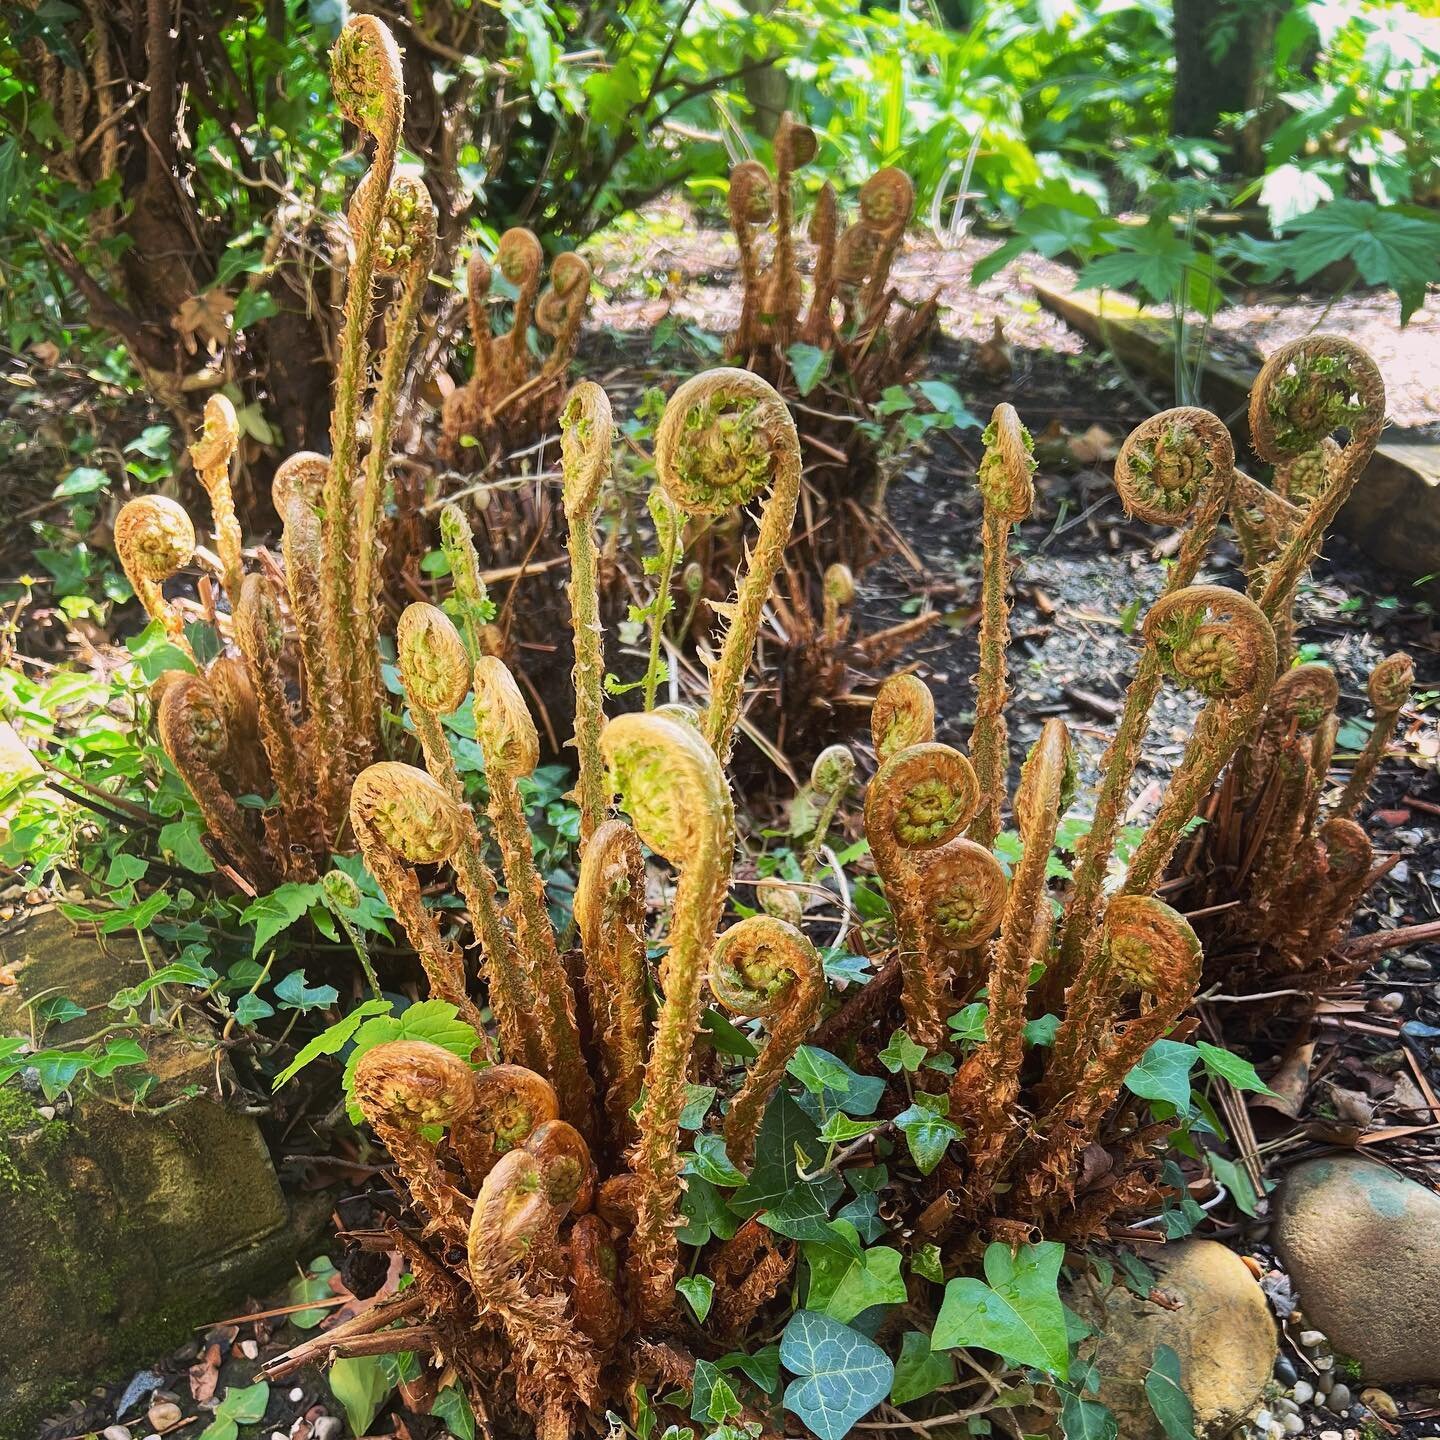 Ferns ❤️ all this rain! #jurassicpark